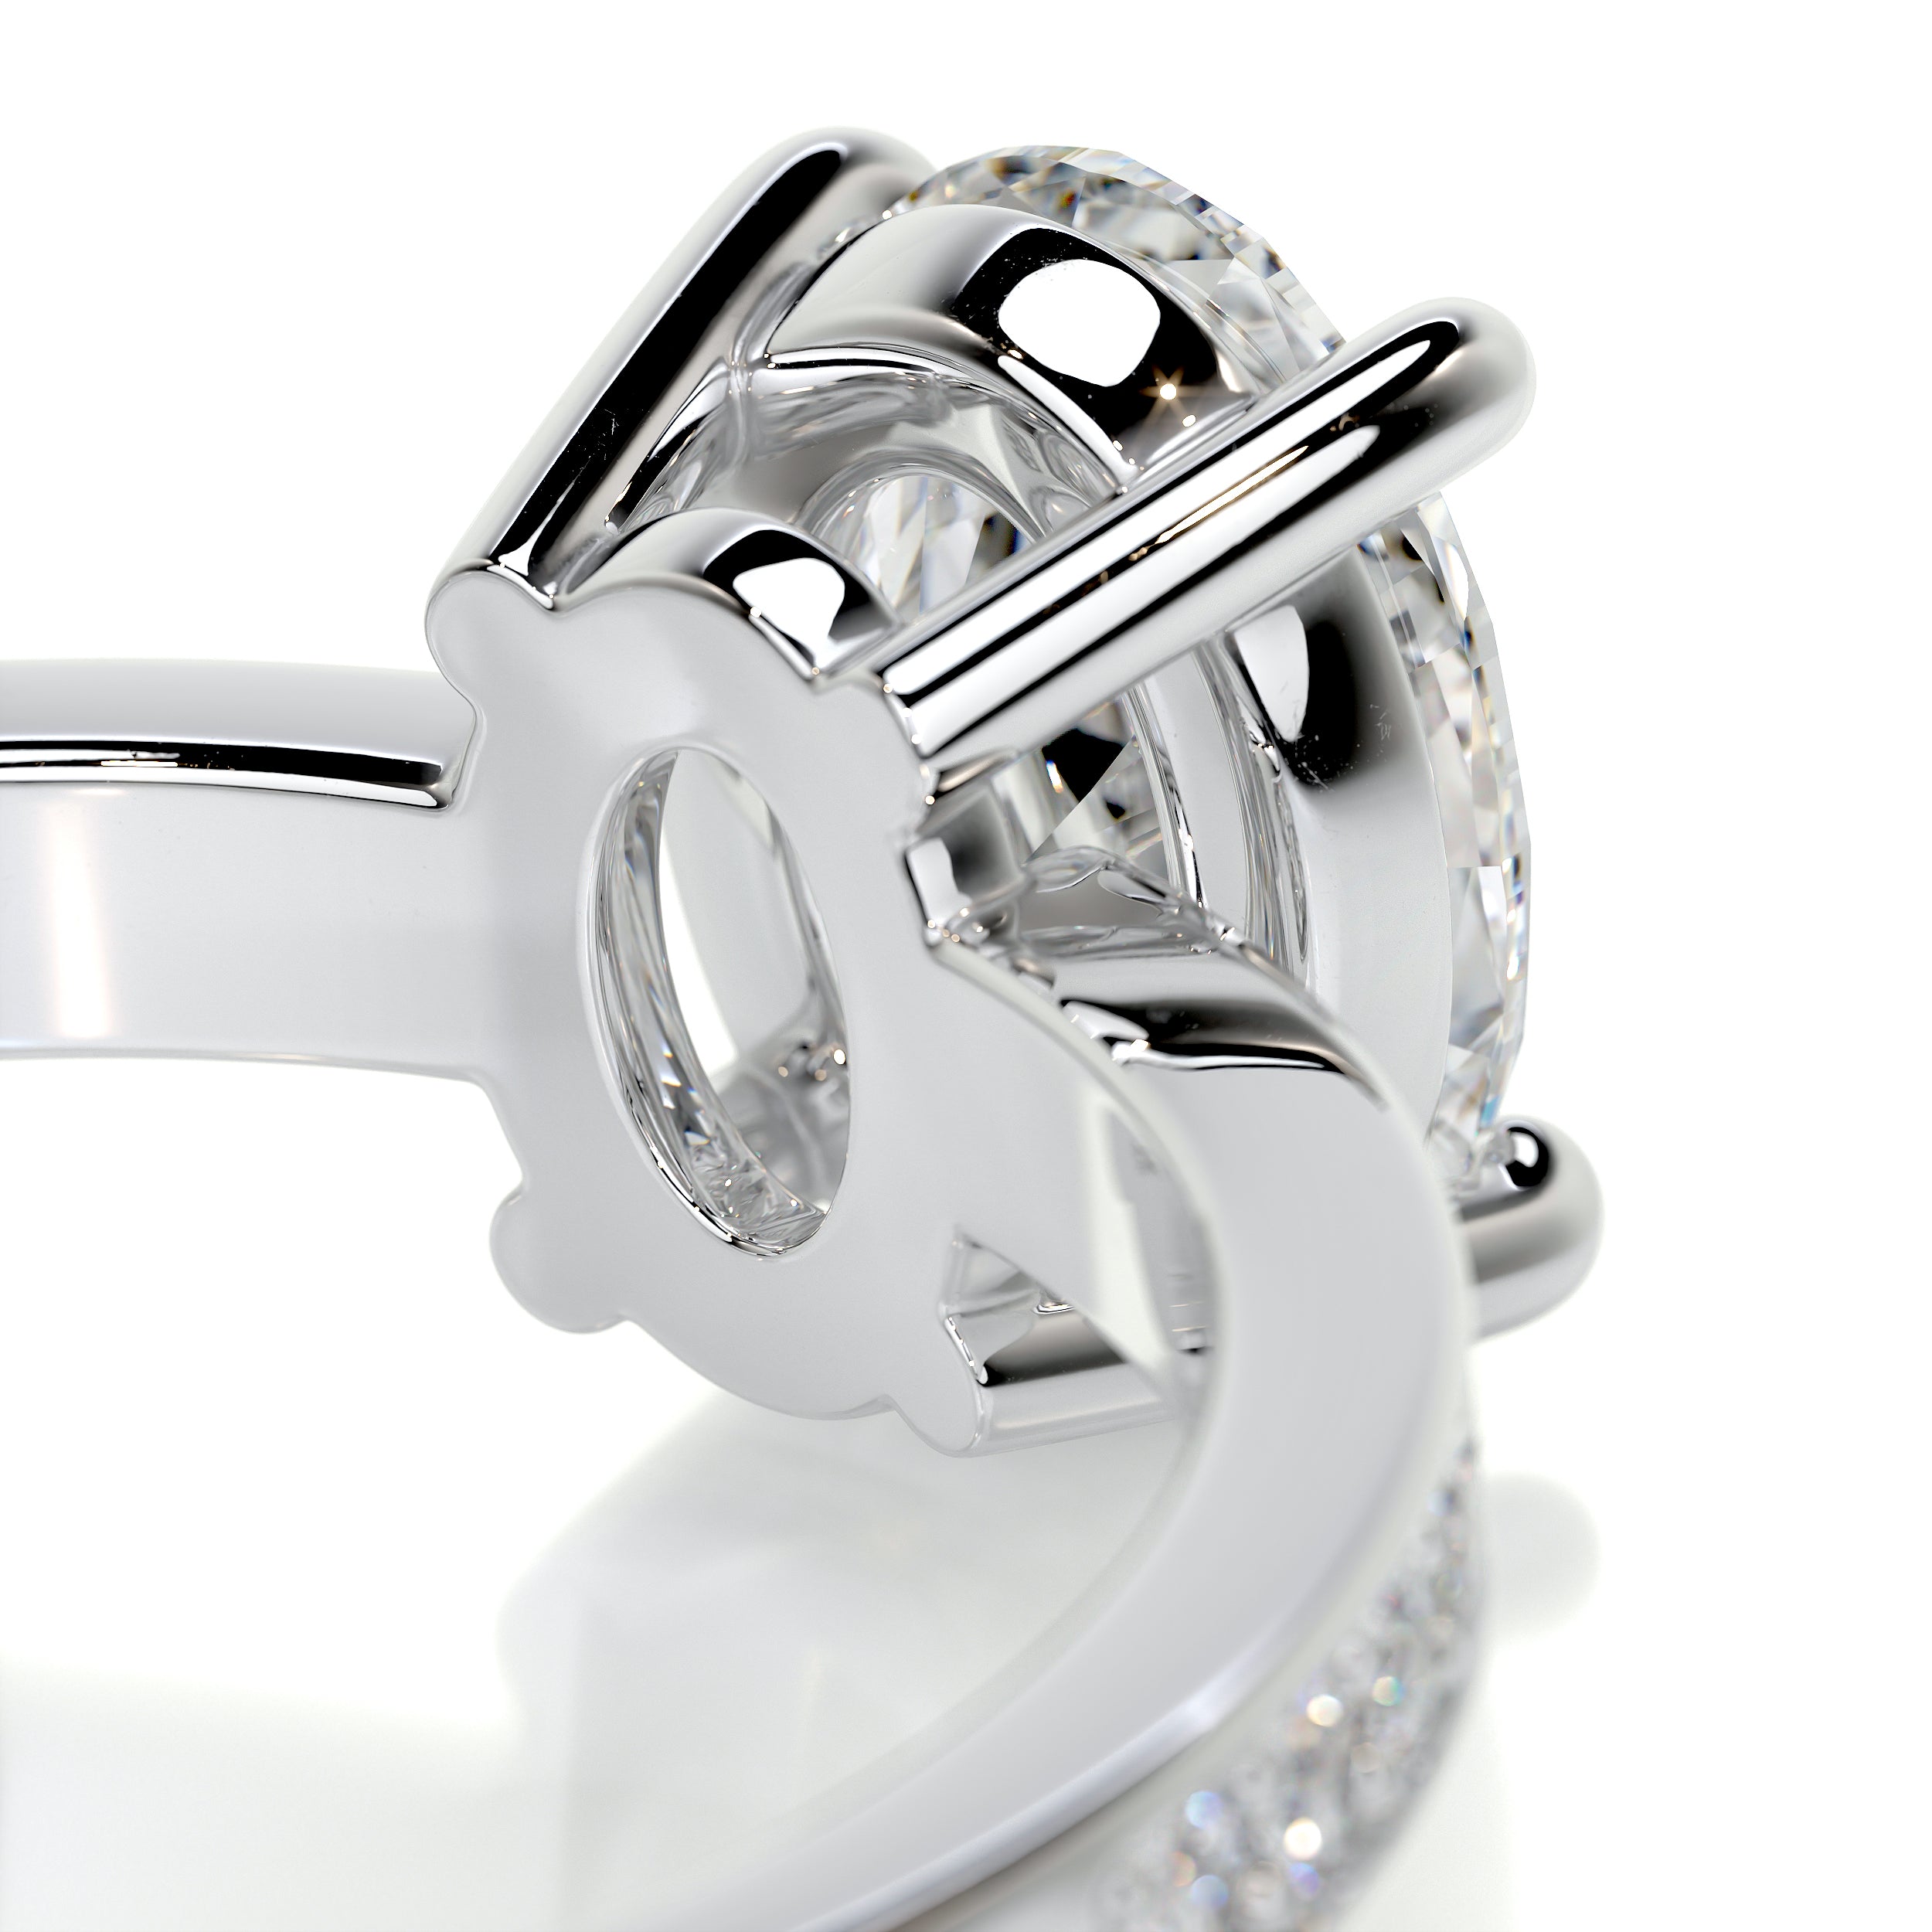 Giselle Diamond Engagement Ring -14K White Gold